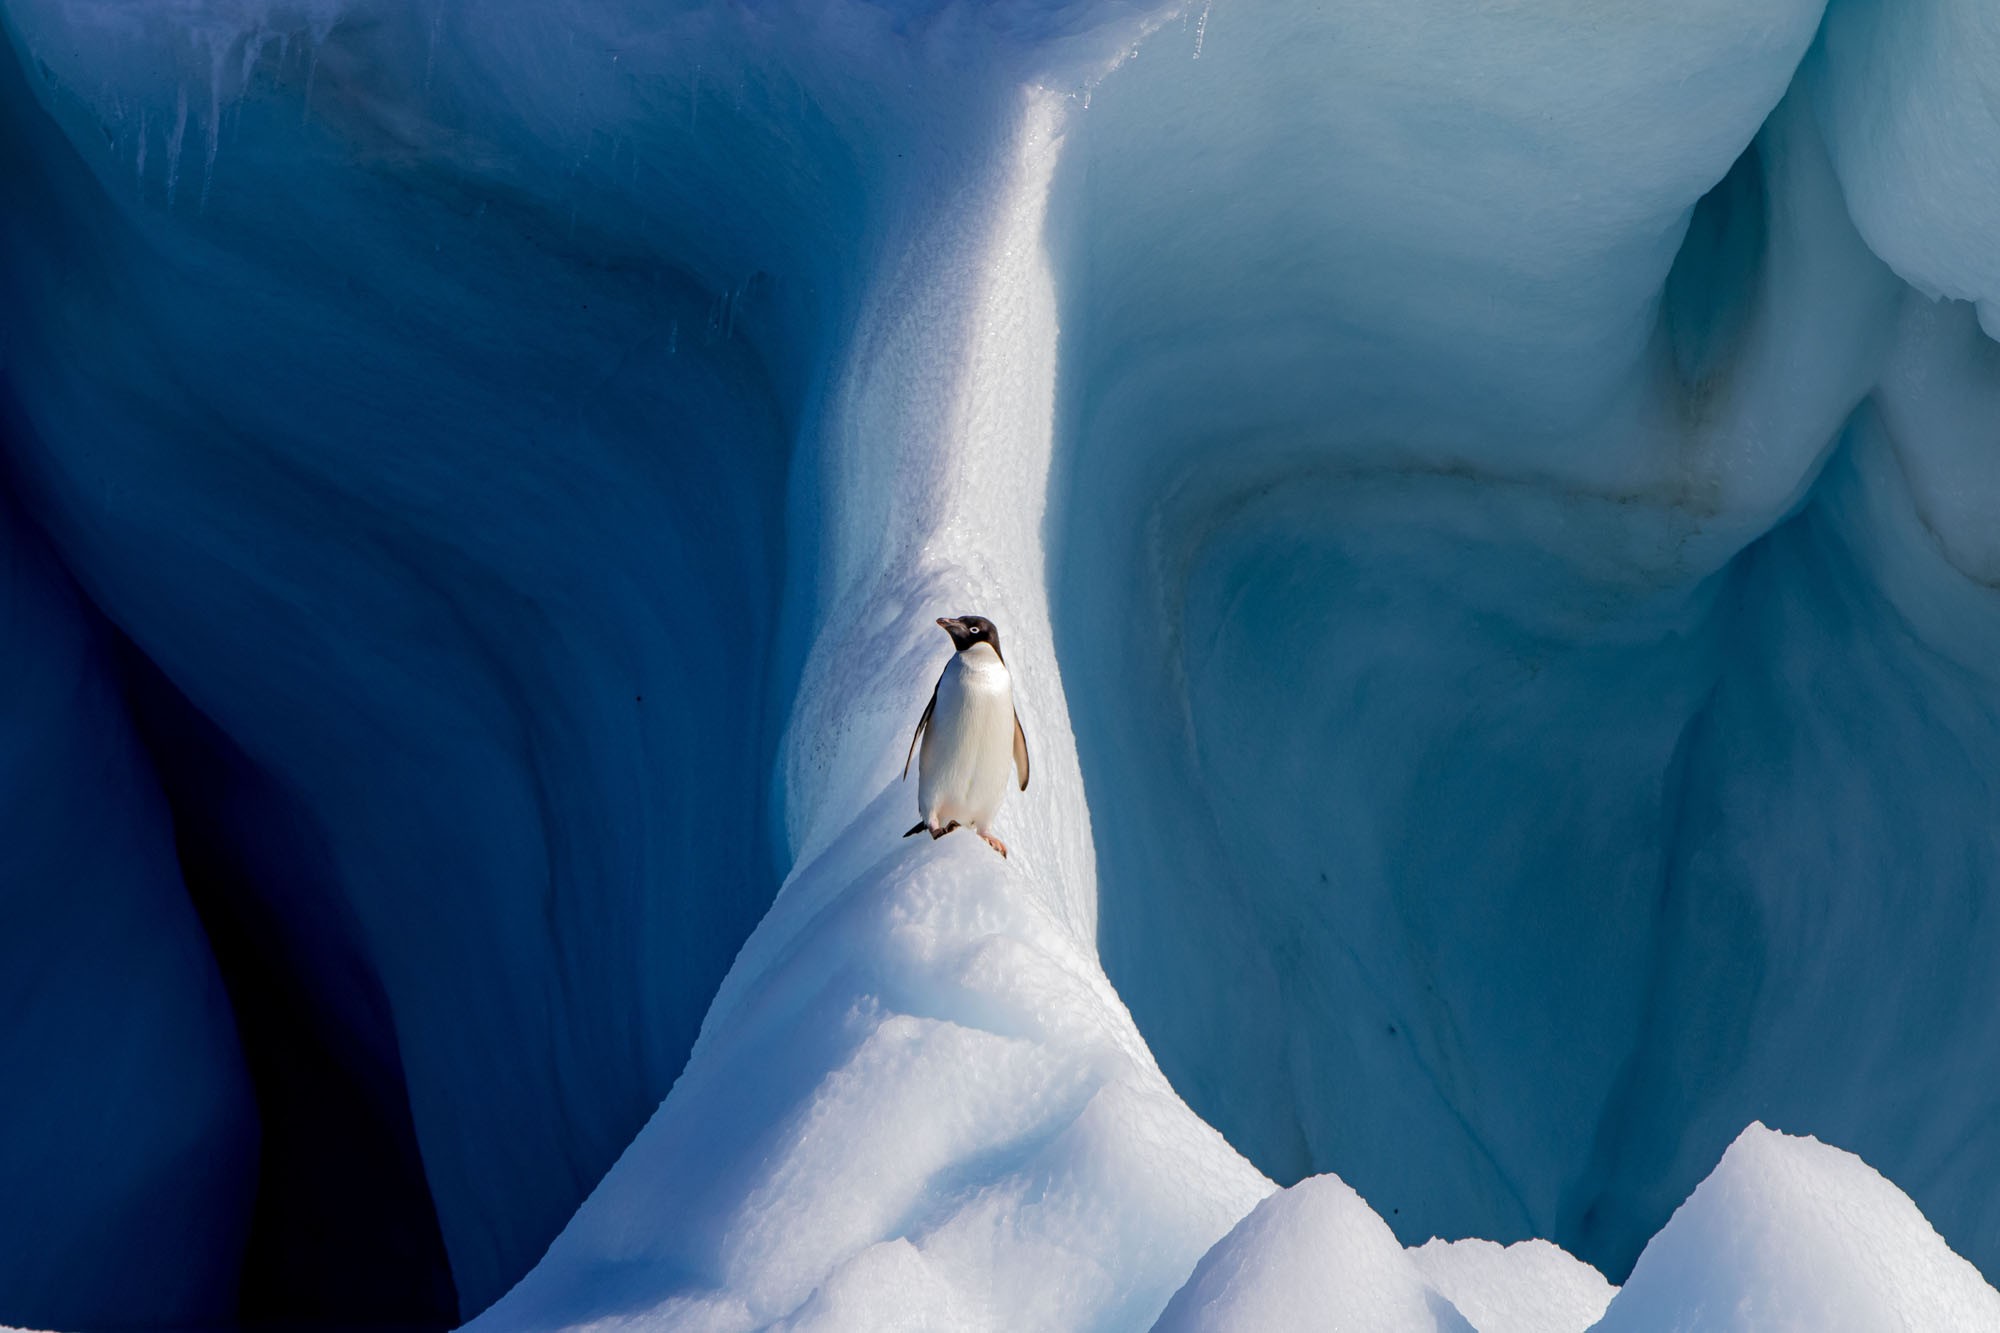 Победитель в категории Мир природы, 2019. Пингвин Адели на айсберге, Антарктида. Автор Конор Райан